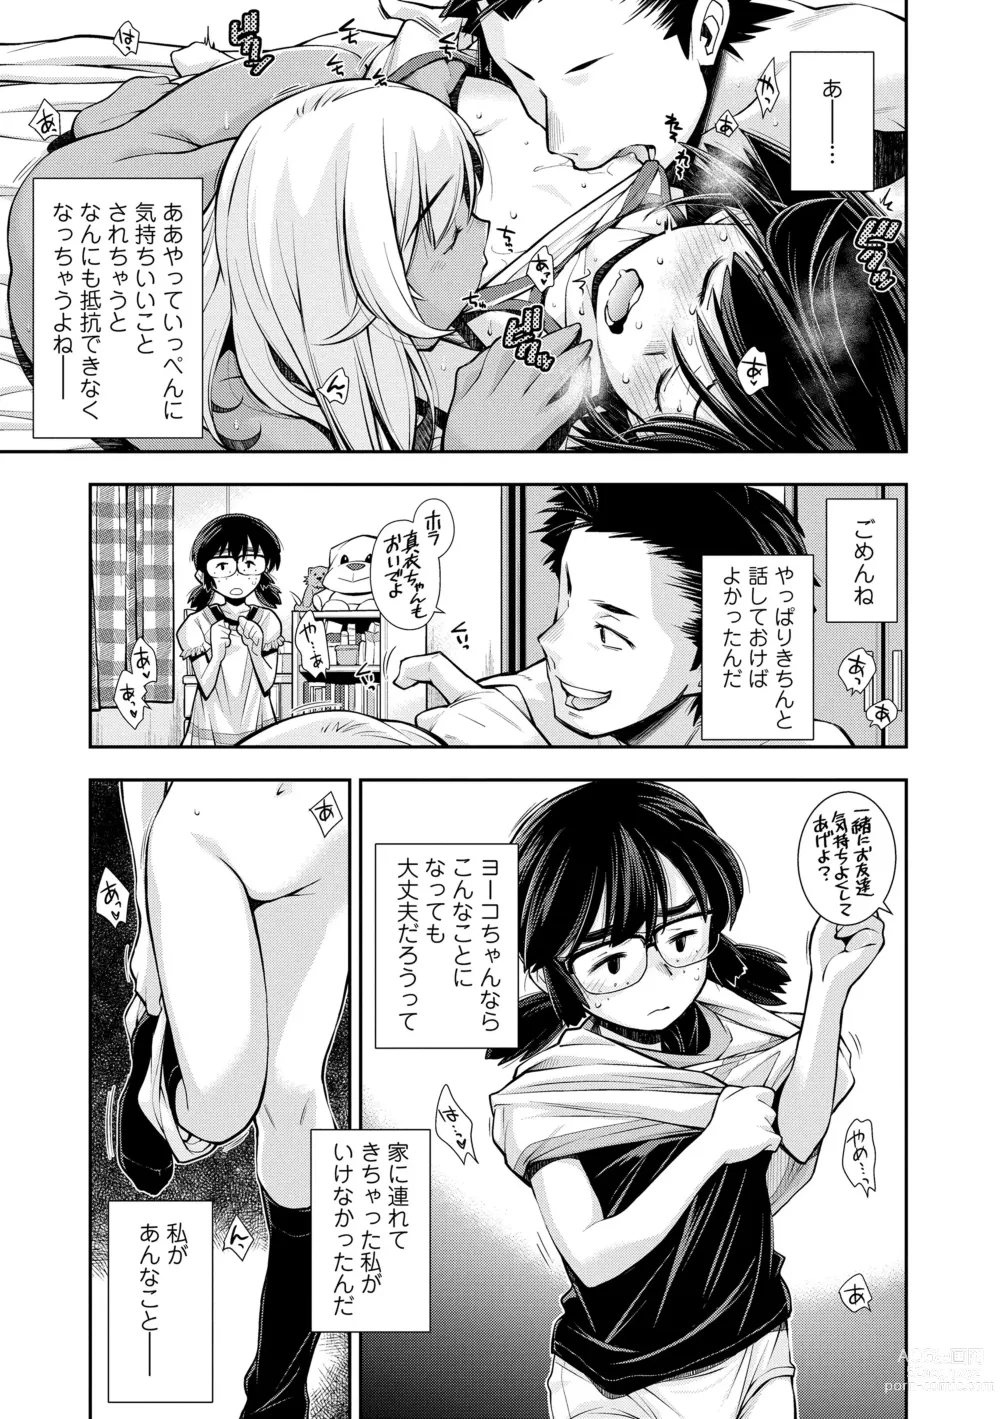 Page 7 of manga Onnanoko wa Sono Yubi no Ugoki ni Yowain desu